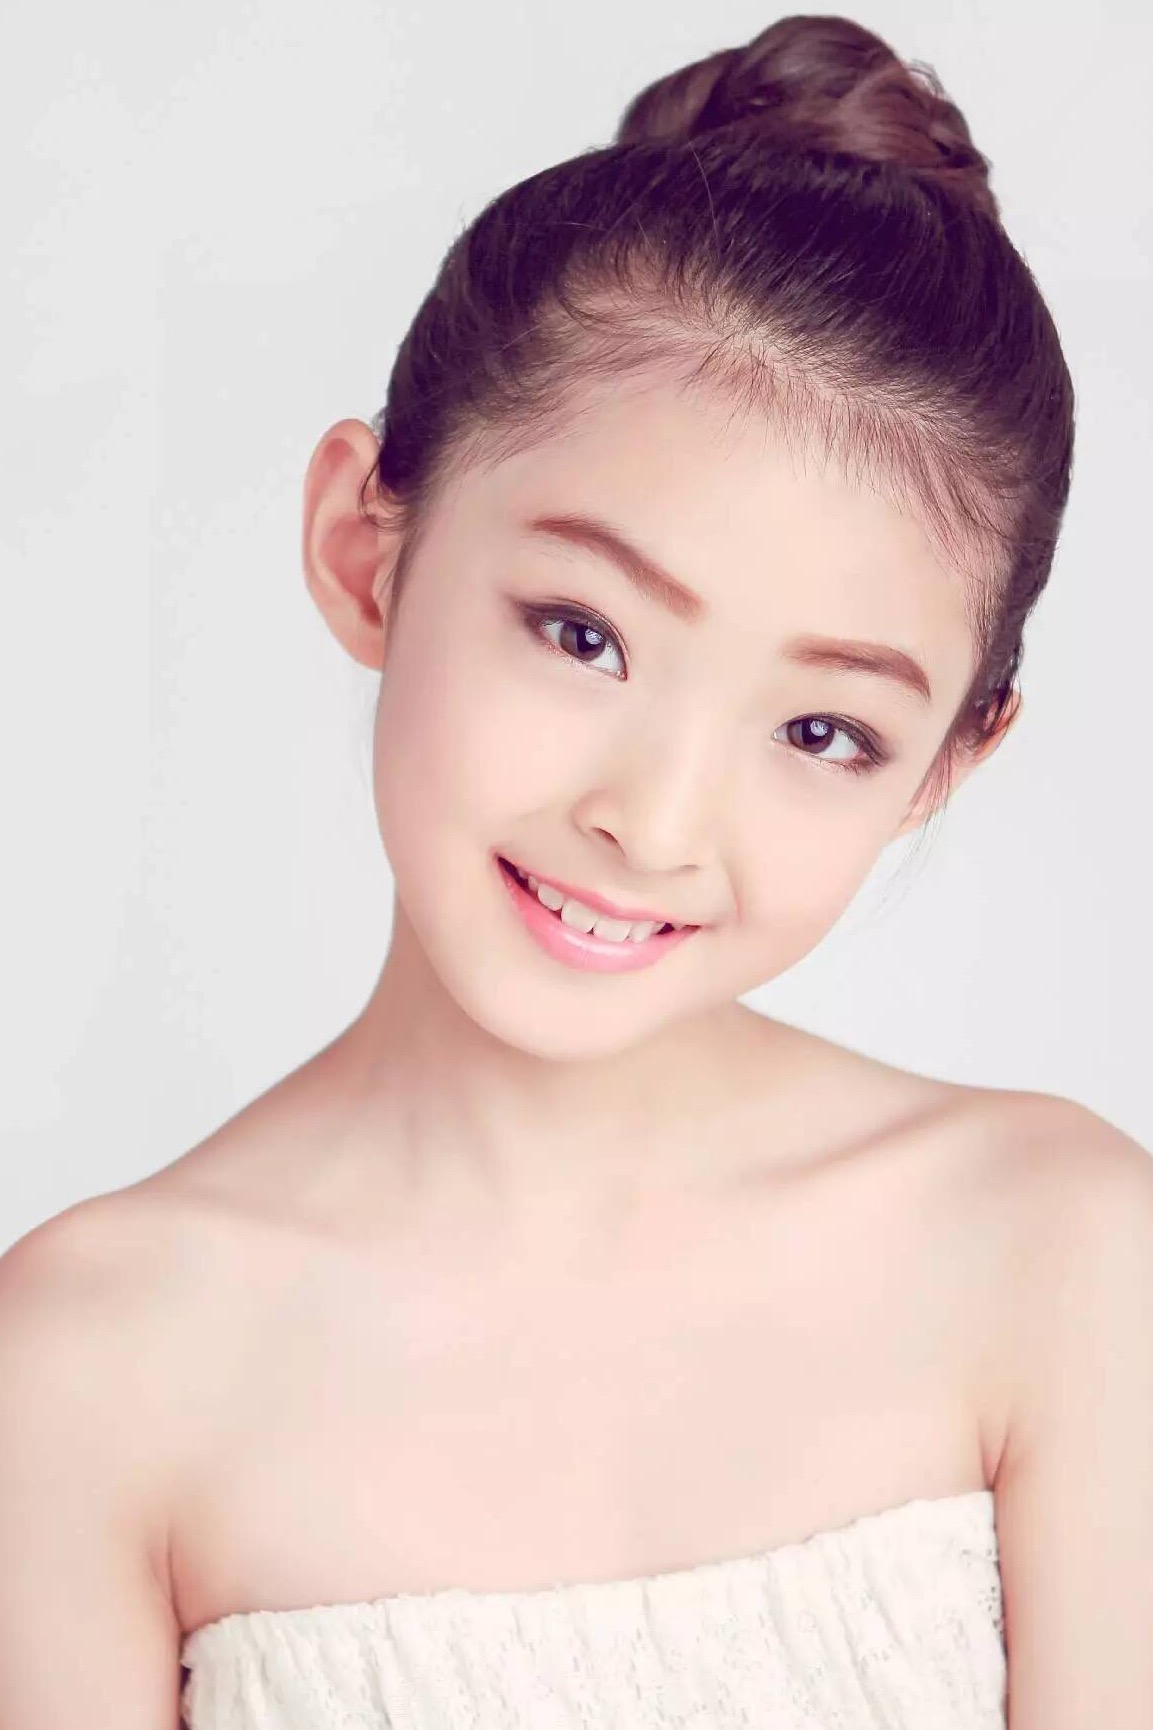 中国最美的女孩童星图片